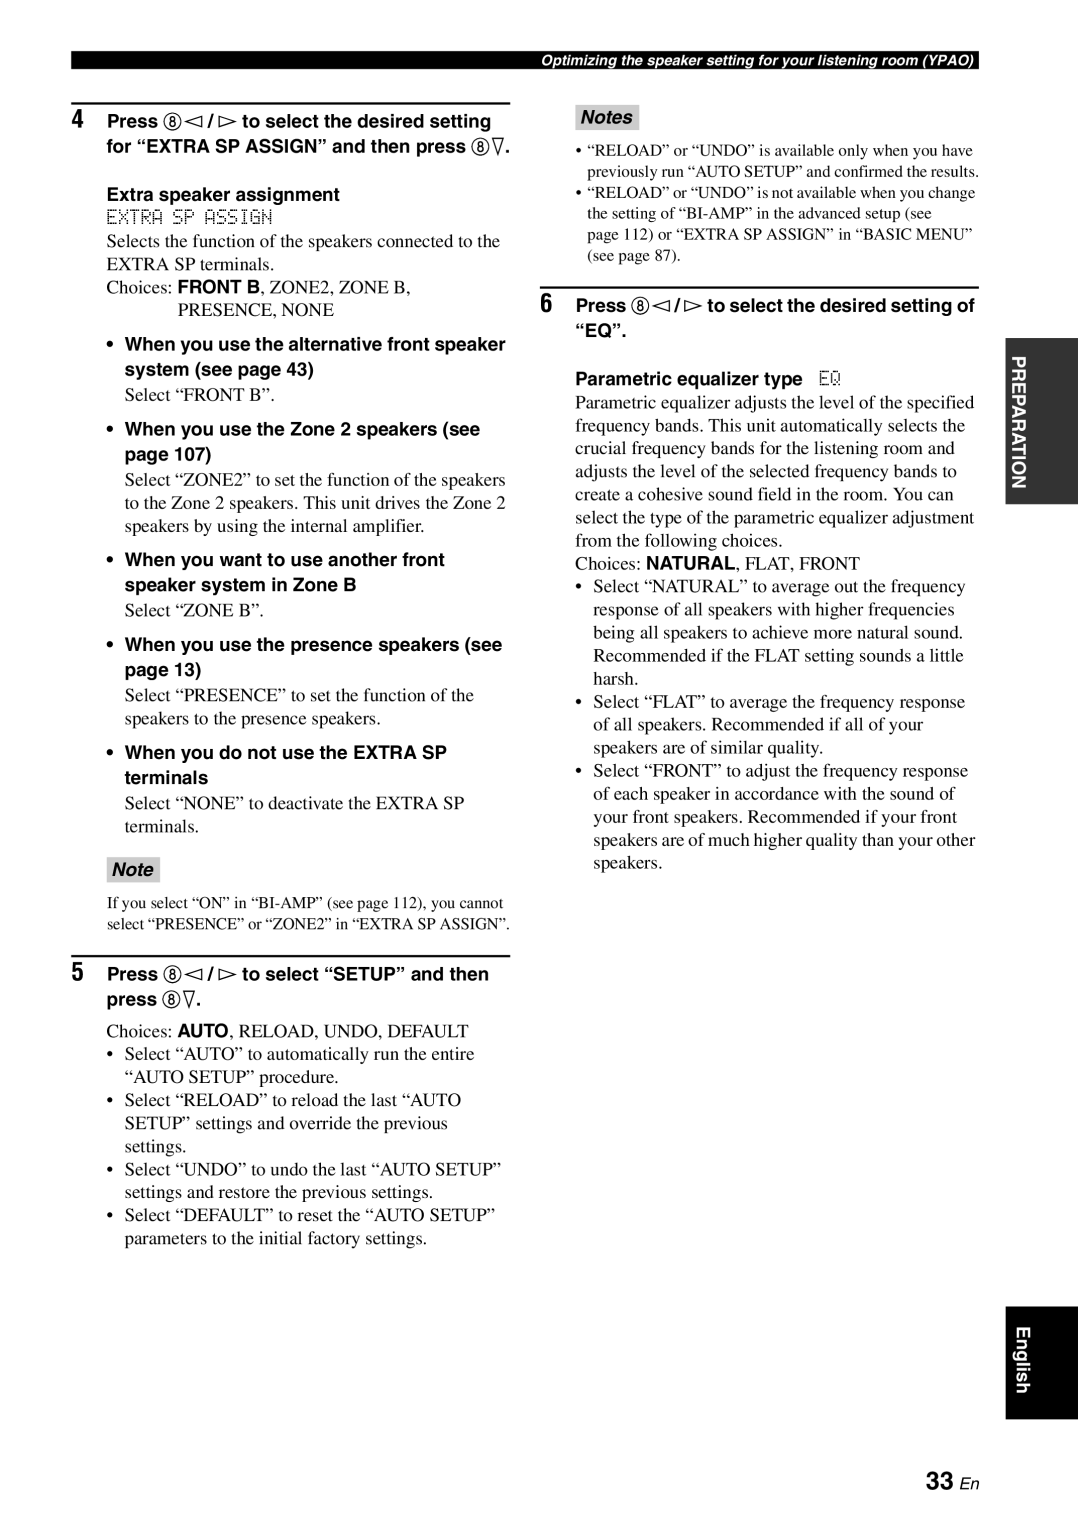 Yamaha HTR-6180 owner manual 33 En, Notes 